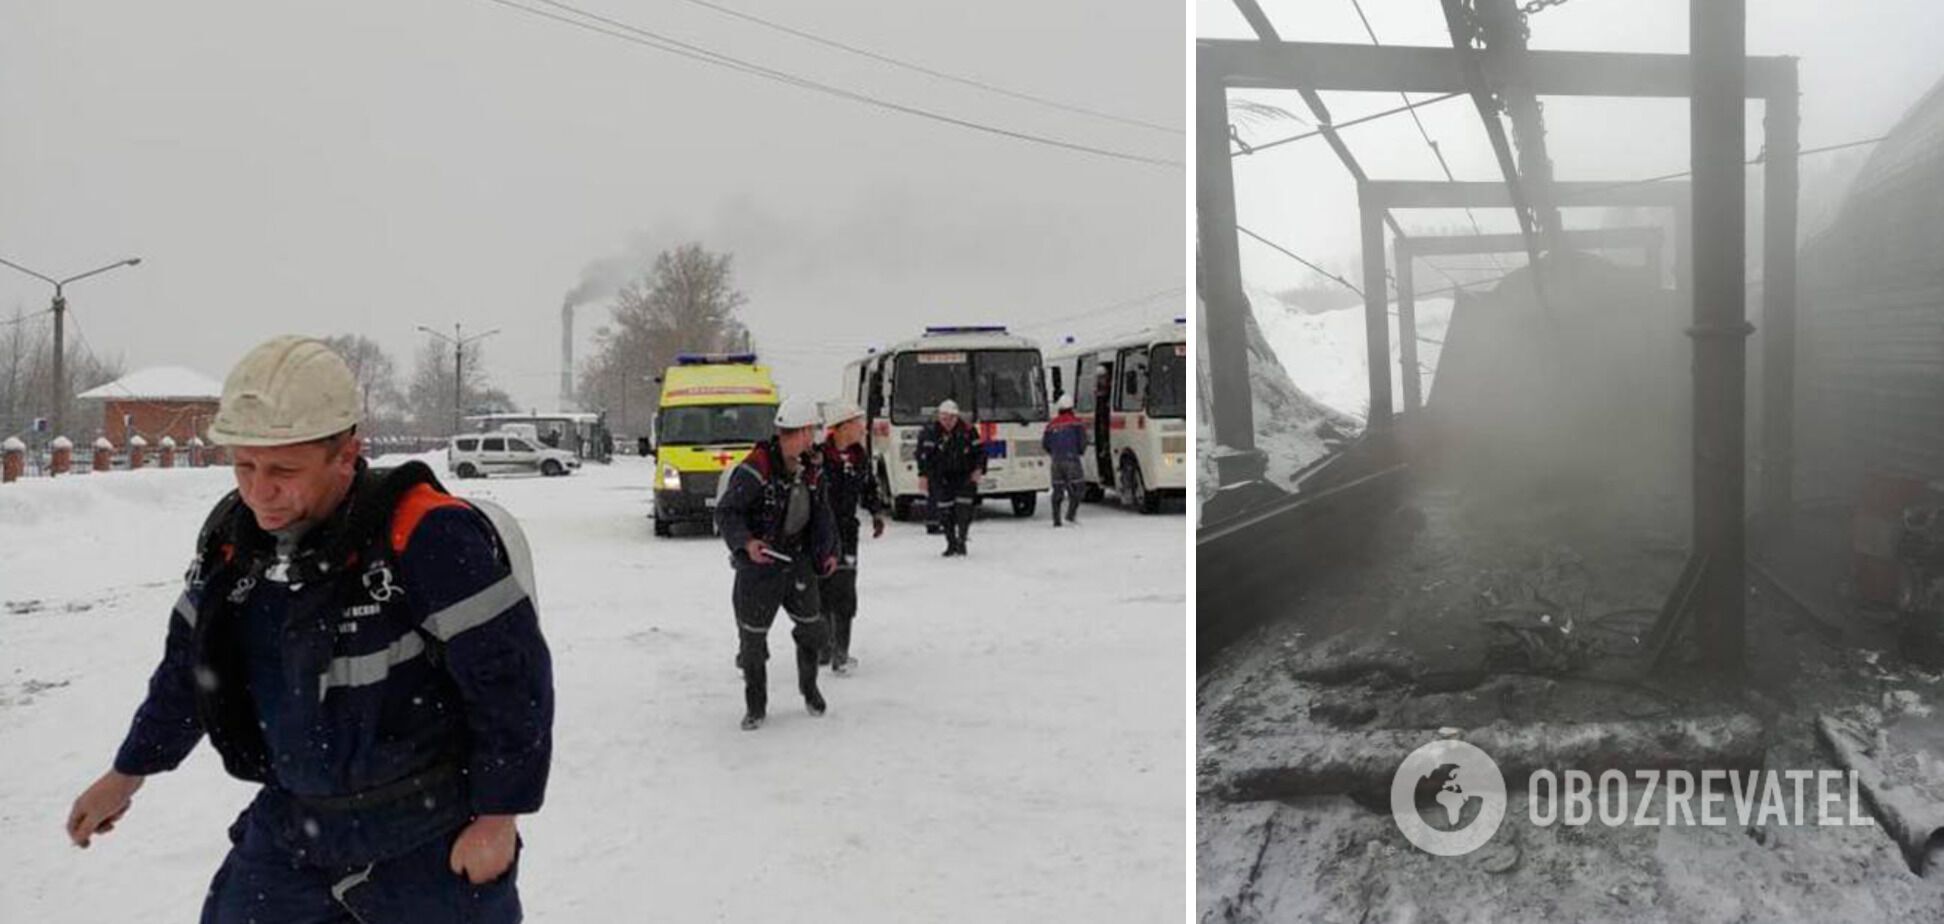 Один горняк погиб, 43 пострадали в результате ЧП на шахте в России